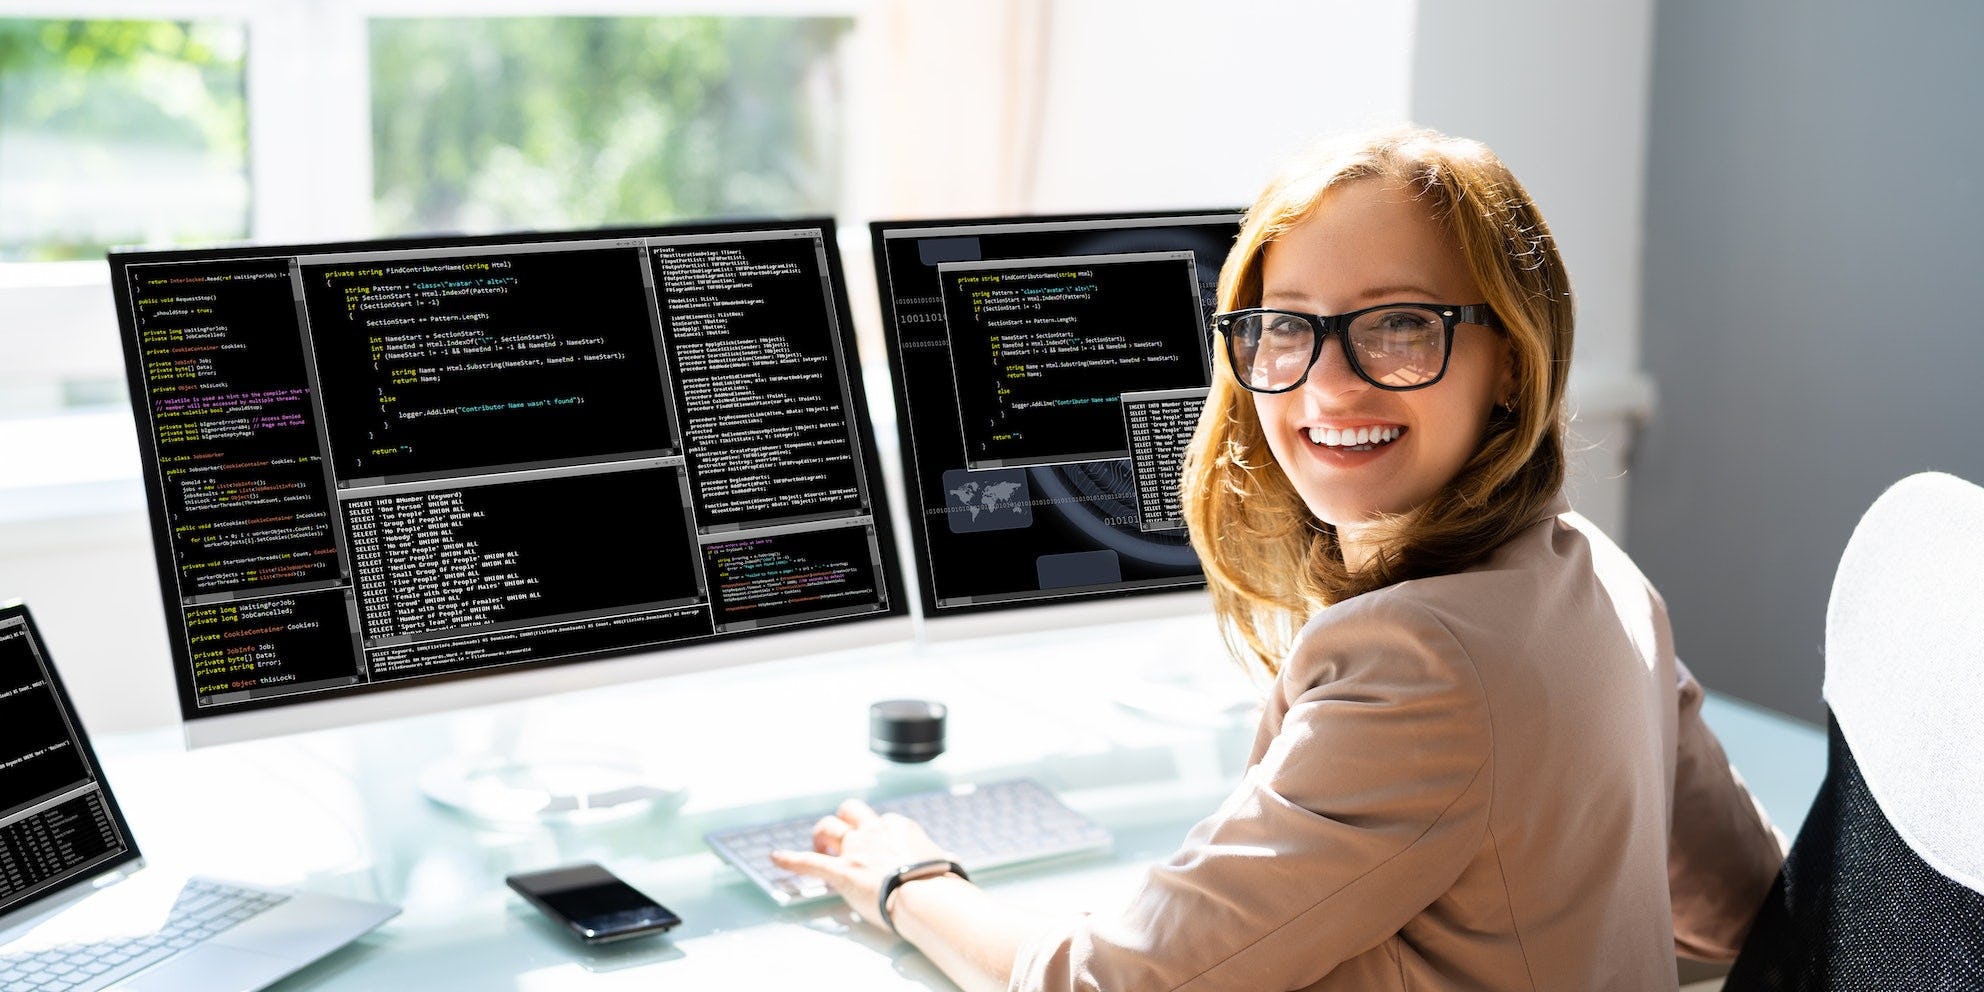 Een vrouw kijkt vrolijk de camera in met achter haar twee computerschermen met codeertaal erop.